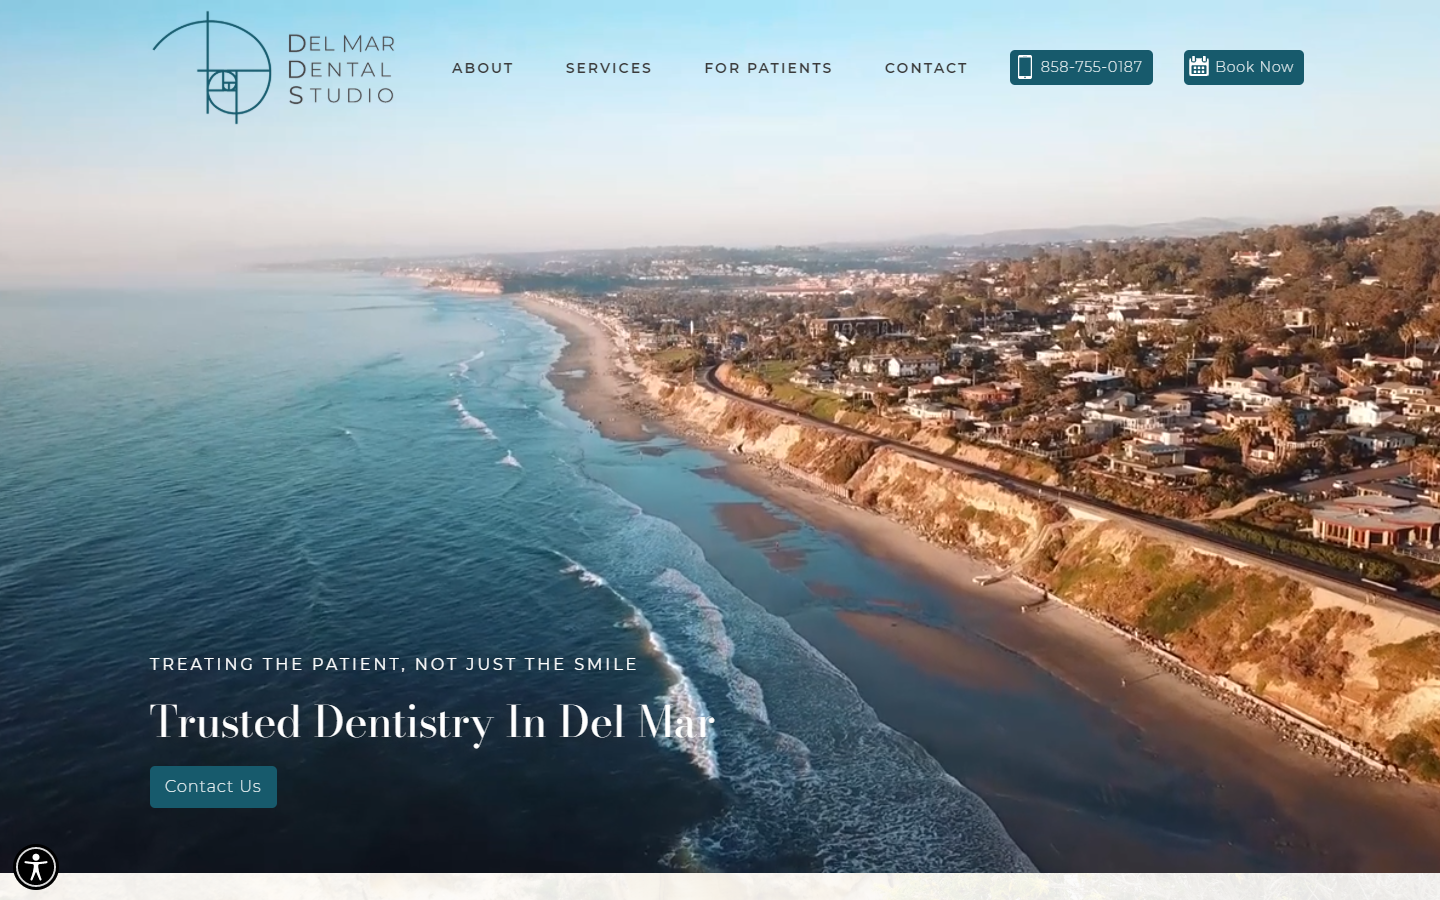 Del Mar Dental Studio